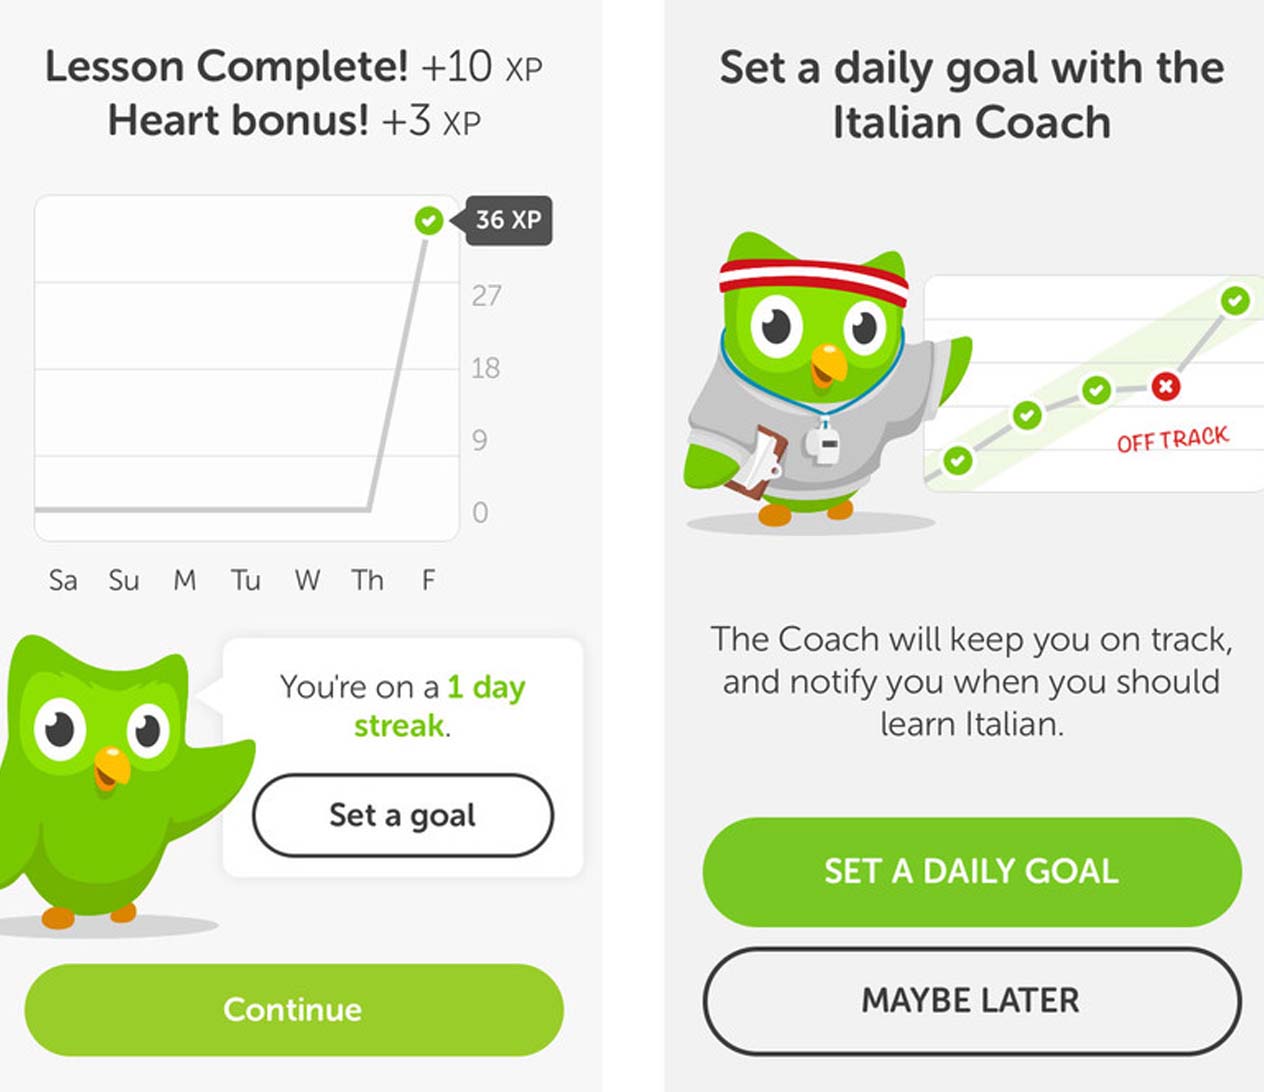 Duolingo เป็นการเรียนแบบ Massive Online Open Courses ให้เรียนร่วมกัน หรือแปลศัพท์ต่างๆ และดำเนินการผ่านไปทีละด่าน